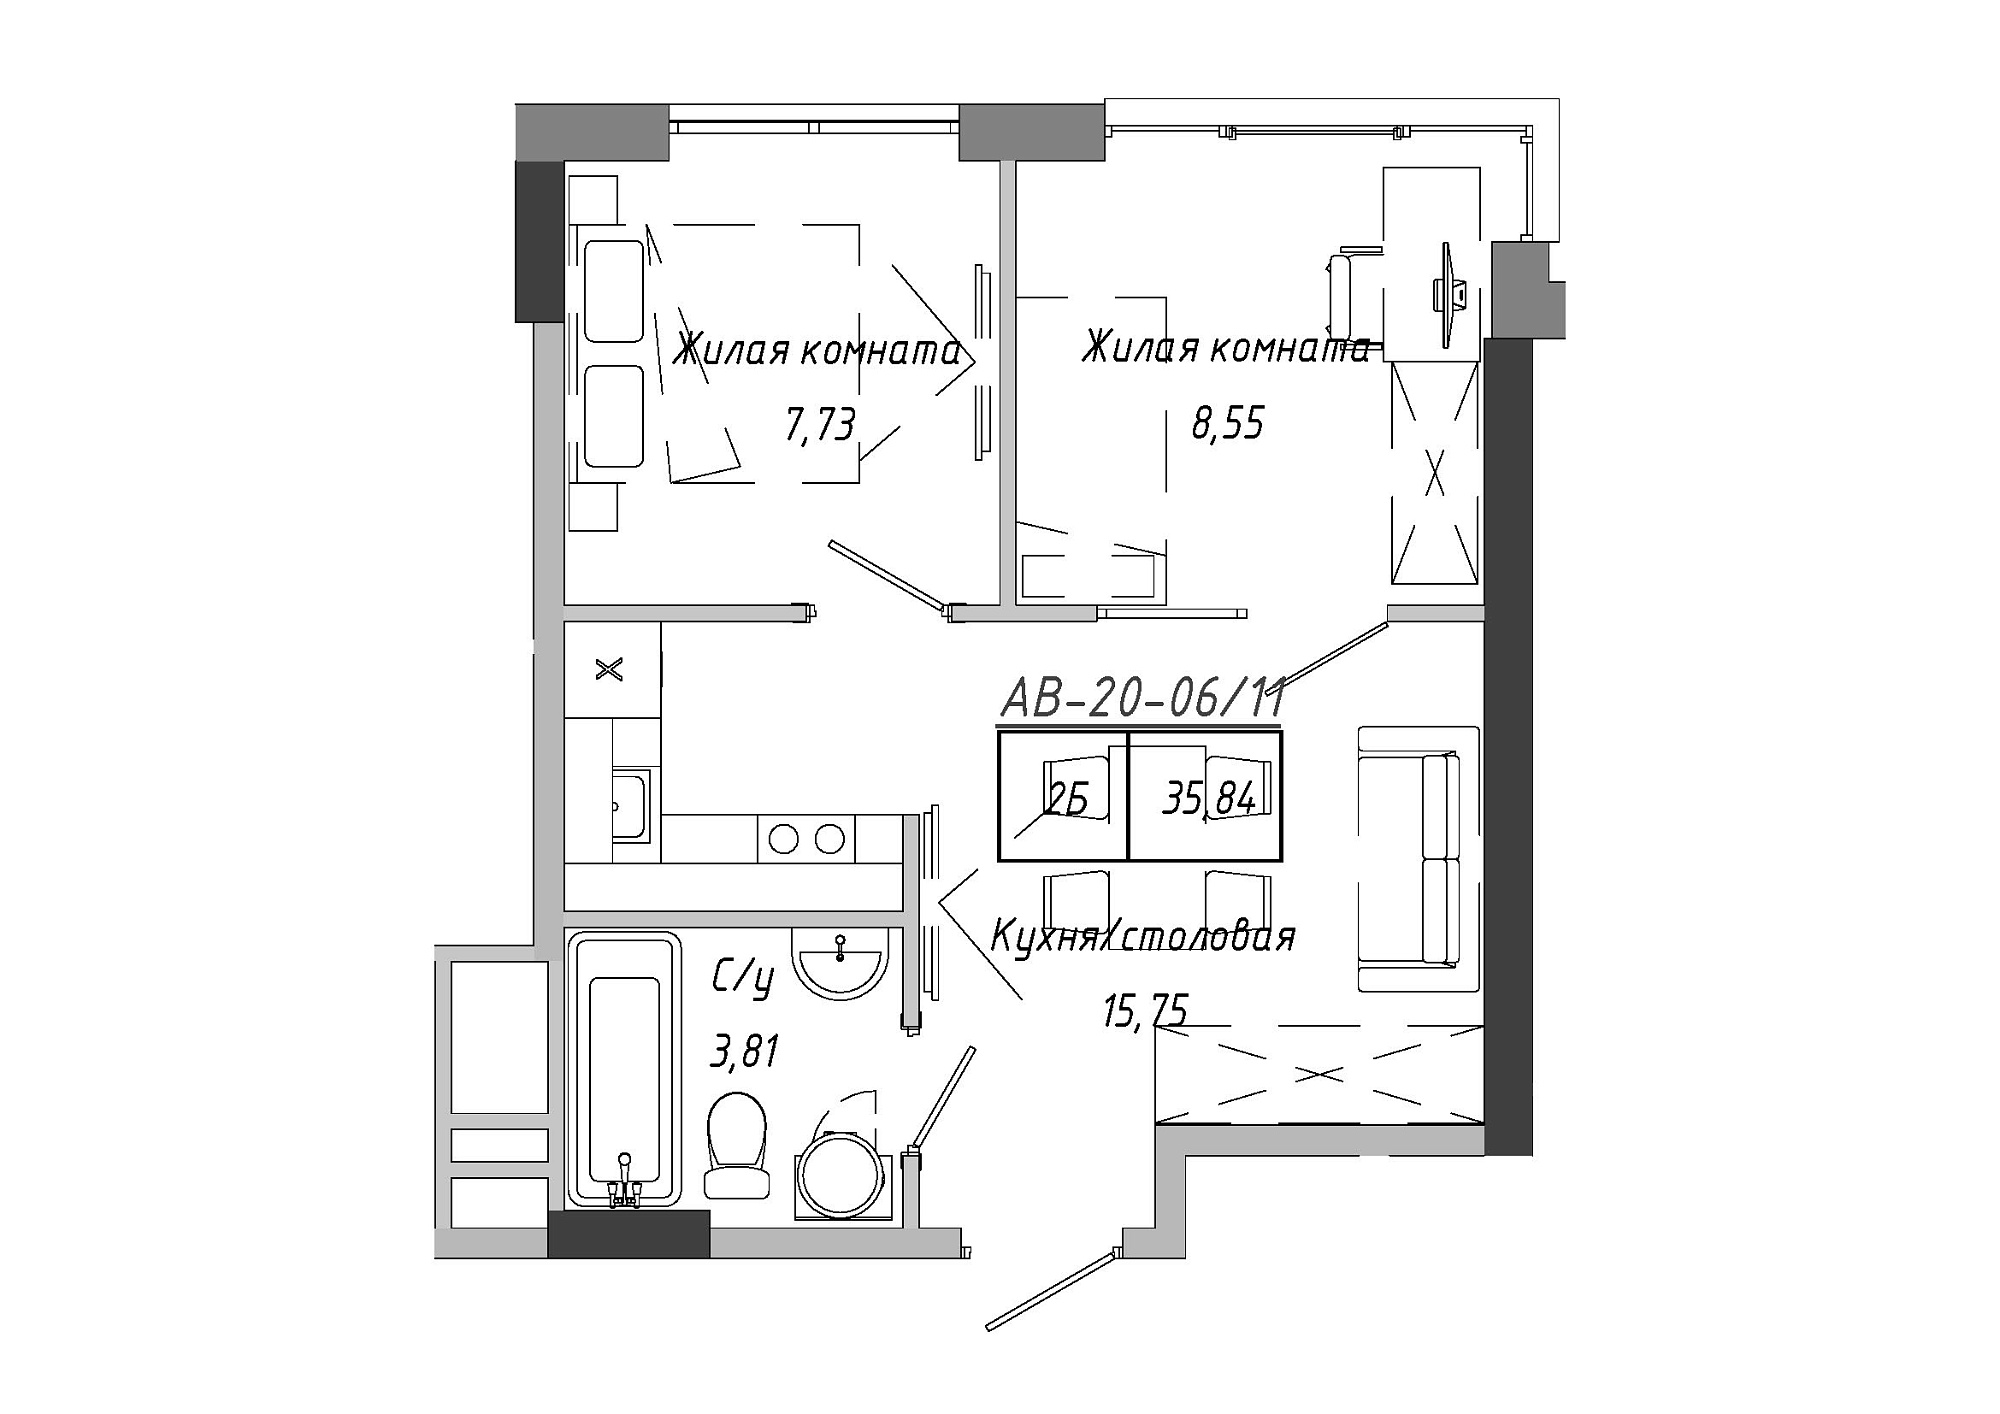 Планування 2-к квартира площею 36.12м2, AB-20-06/00011.